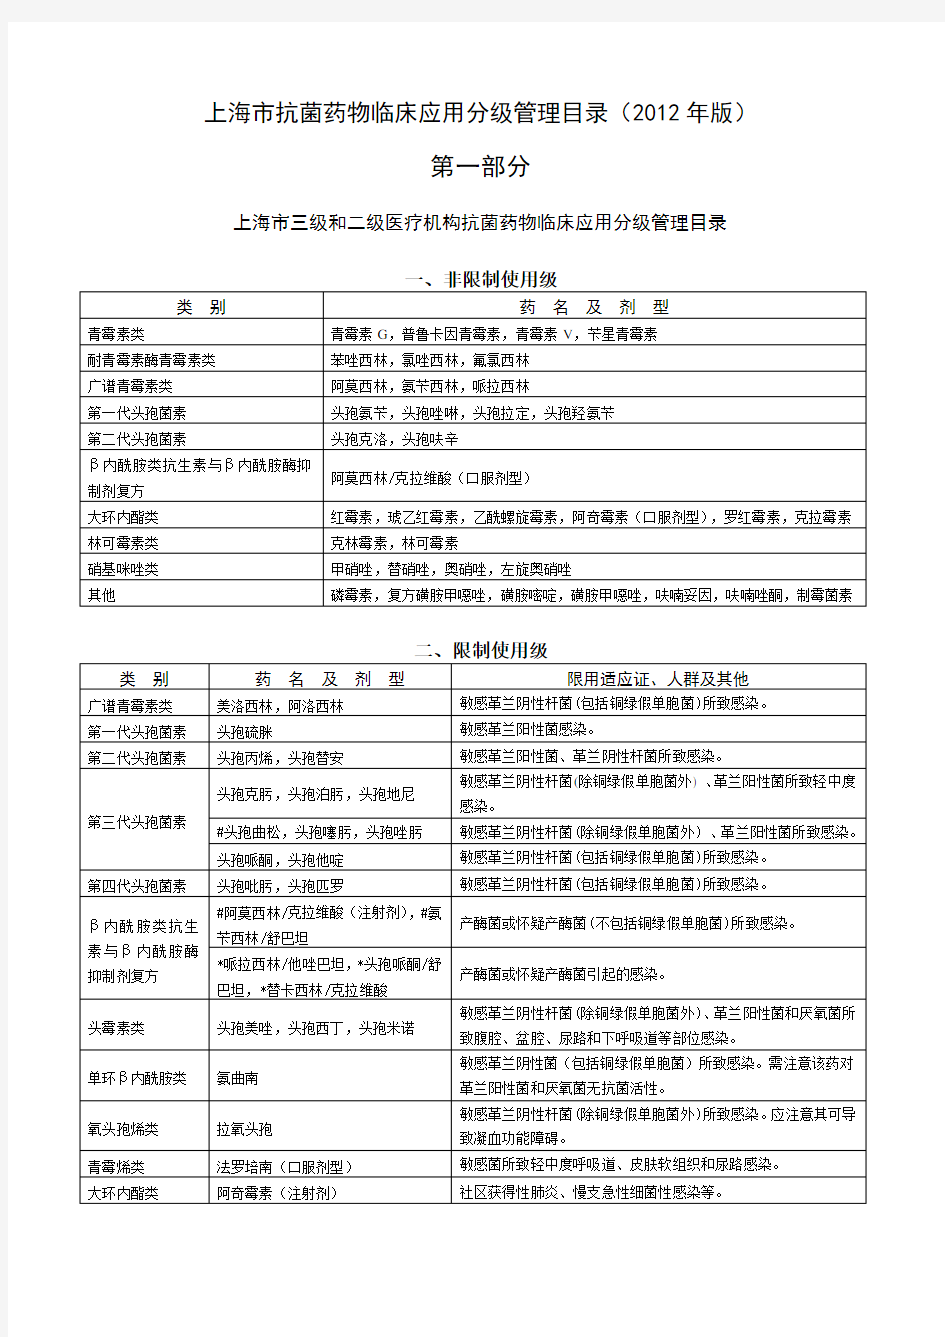 上海市抗菌药物临床应用分级管理目录(2012年版)